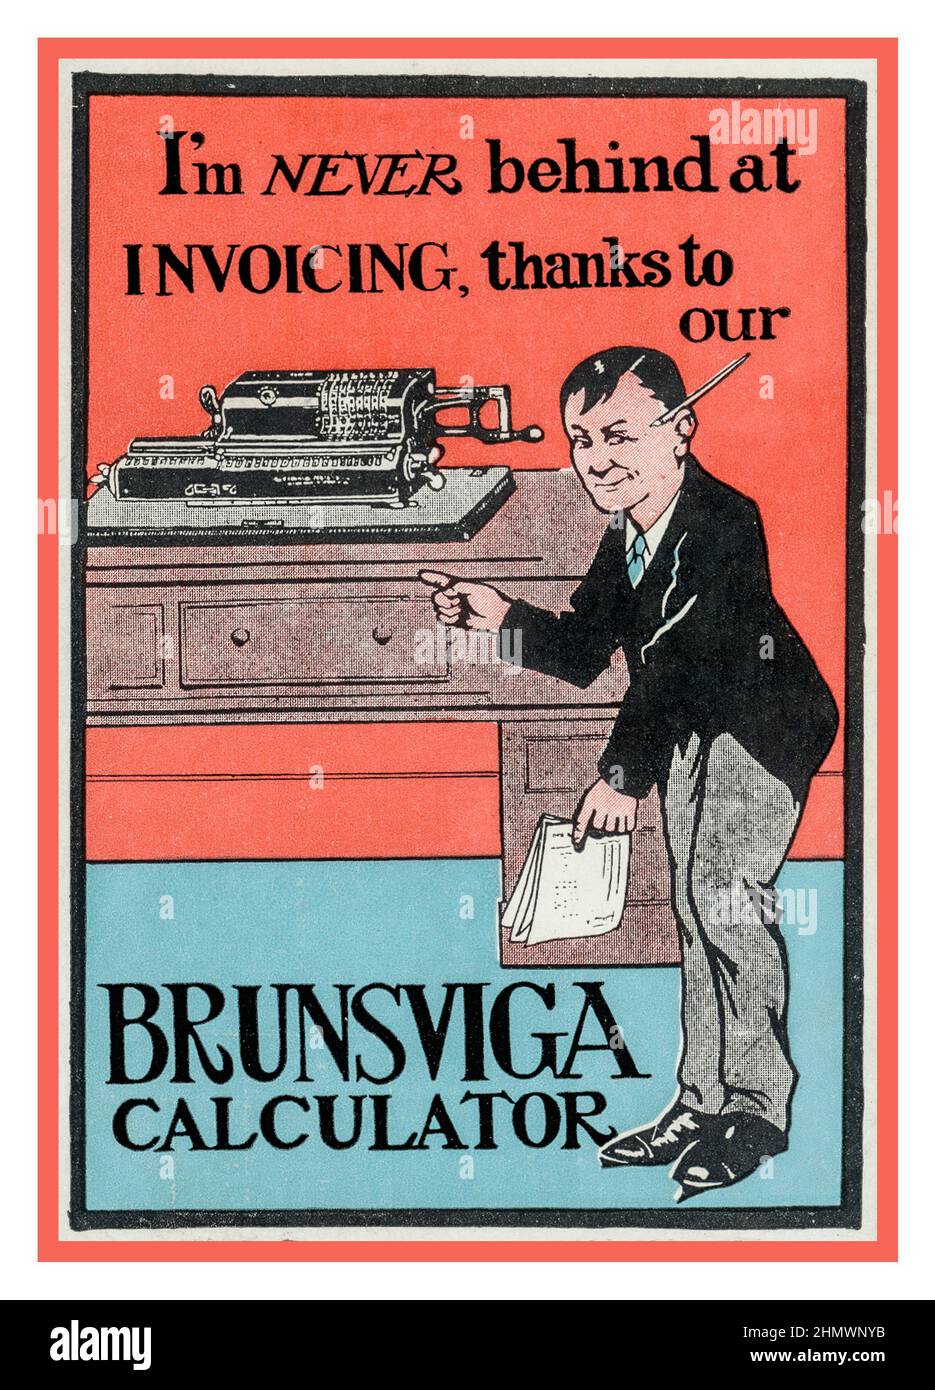 1930s Office Technology Accounting Calculator BRUNSVIGA pubblicità che illustra un addetto alla contabilità che non è mai indietro con la sua fatturazione il Brunsviga Nova 13 Mechanical Calculator Foto Stock